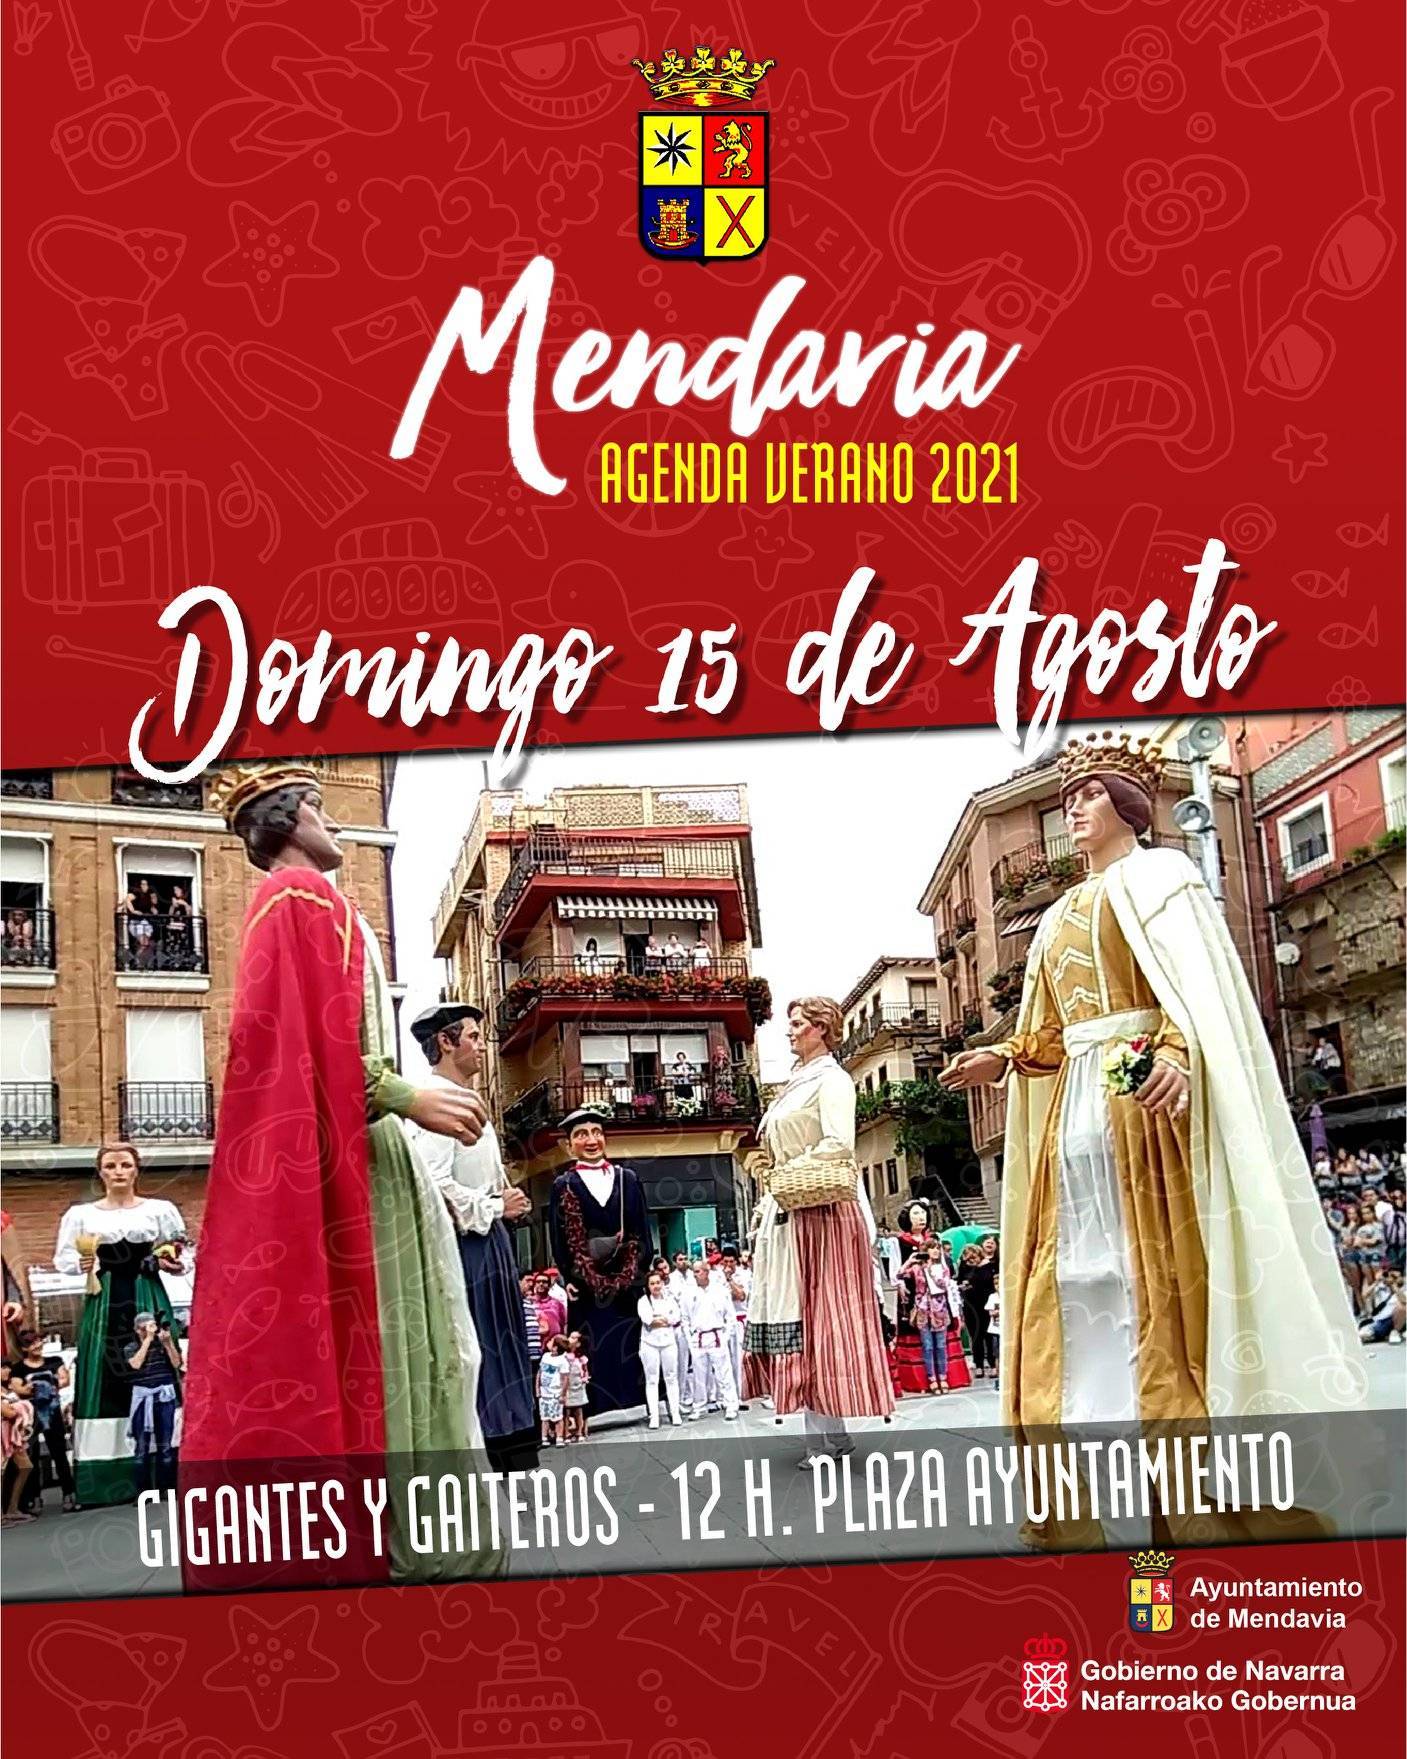 Gigantes y gaiteros (agosto 2021) - Mendavia (Navarra)